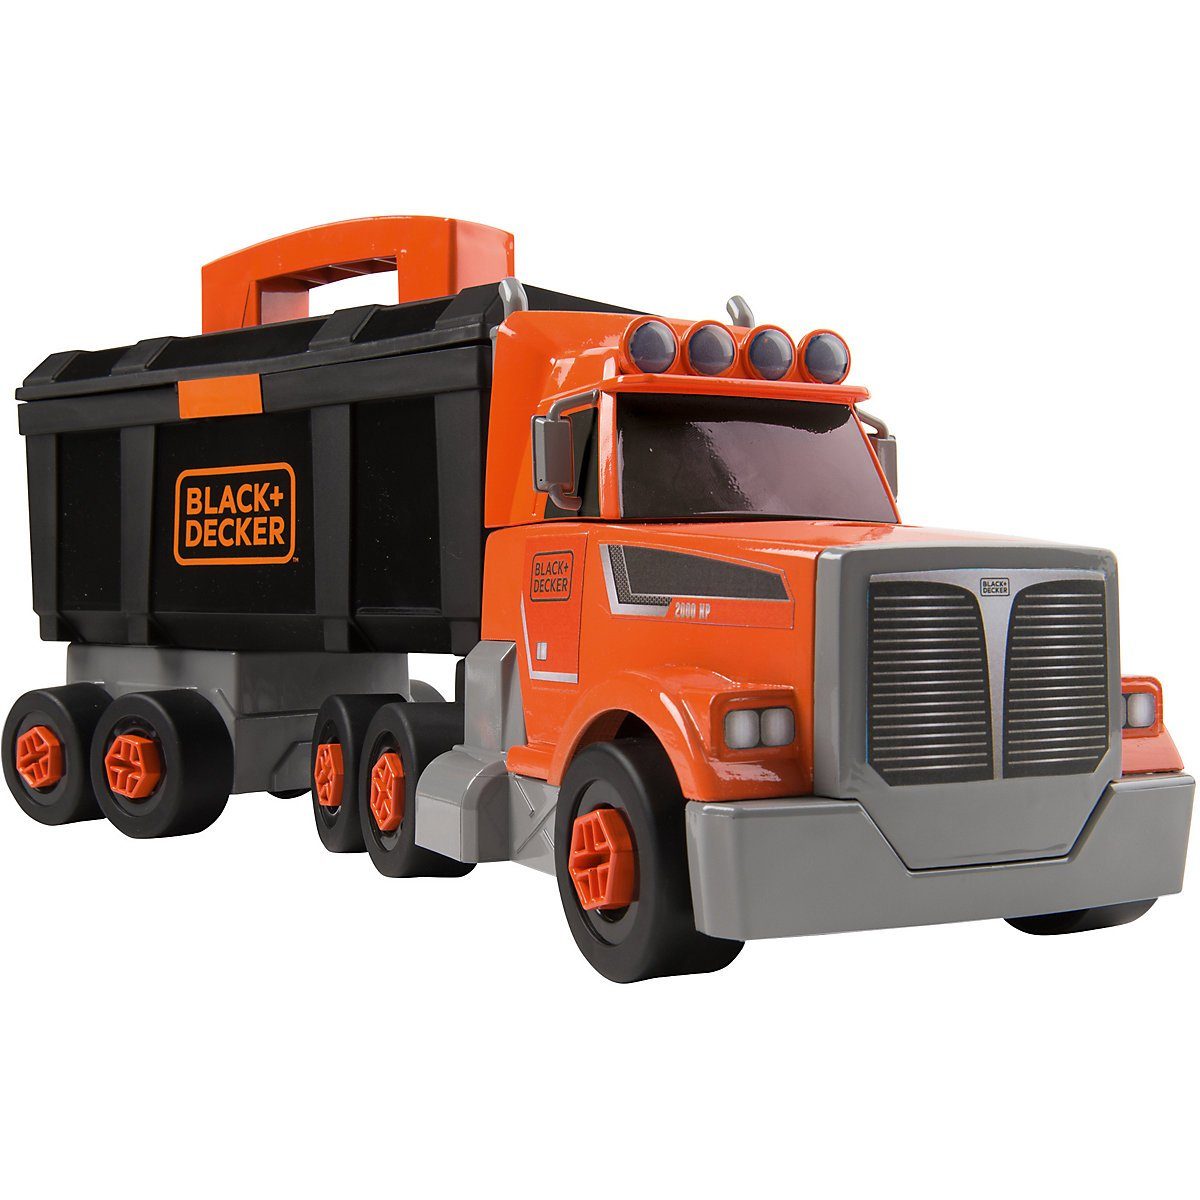 Smoby Spielzeug-Auto »Black+Decker Truck« kaufen | OTTO